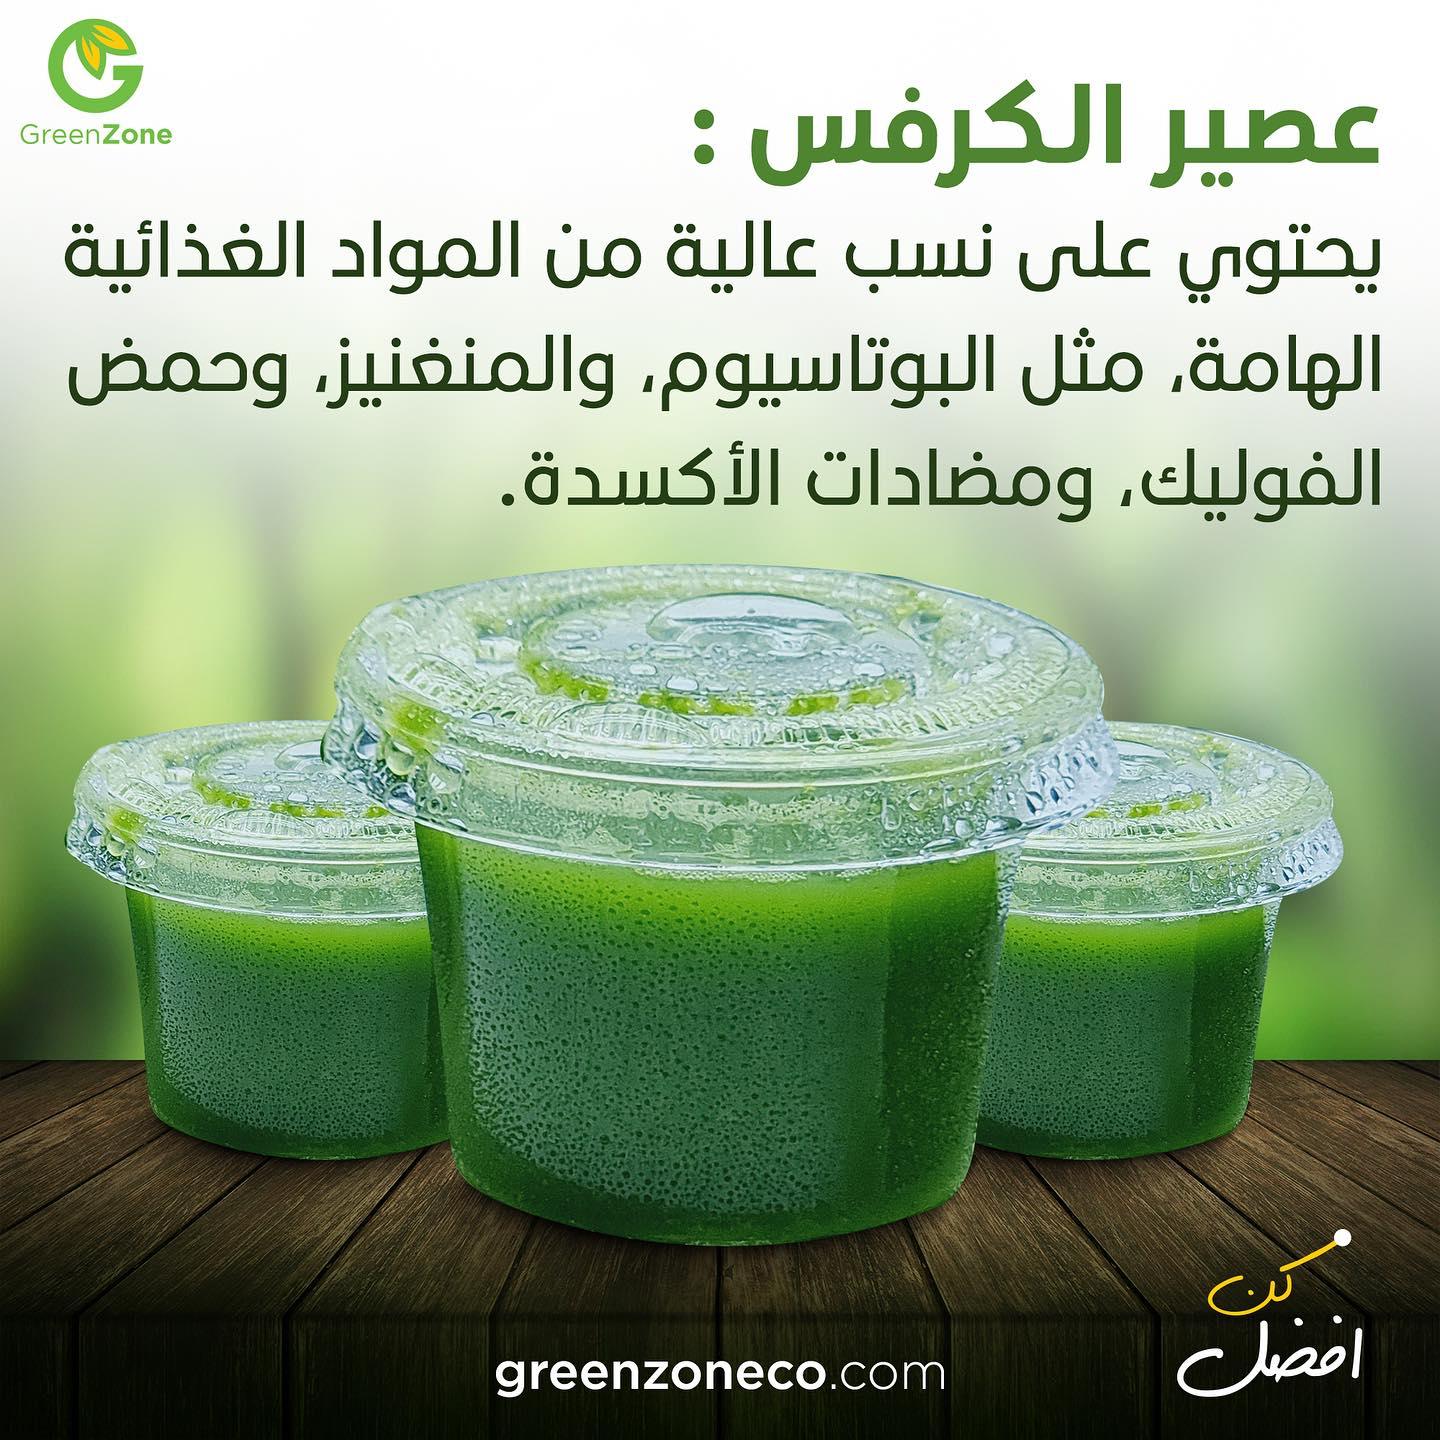 Organic Celery Shots 27ml (15 Shots) - Green Zone